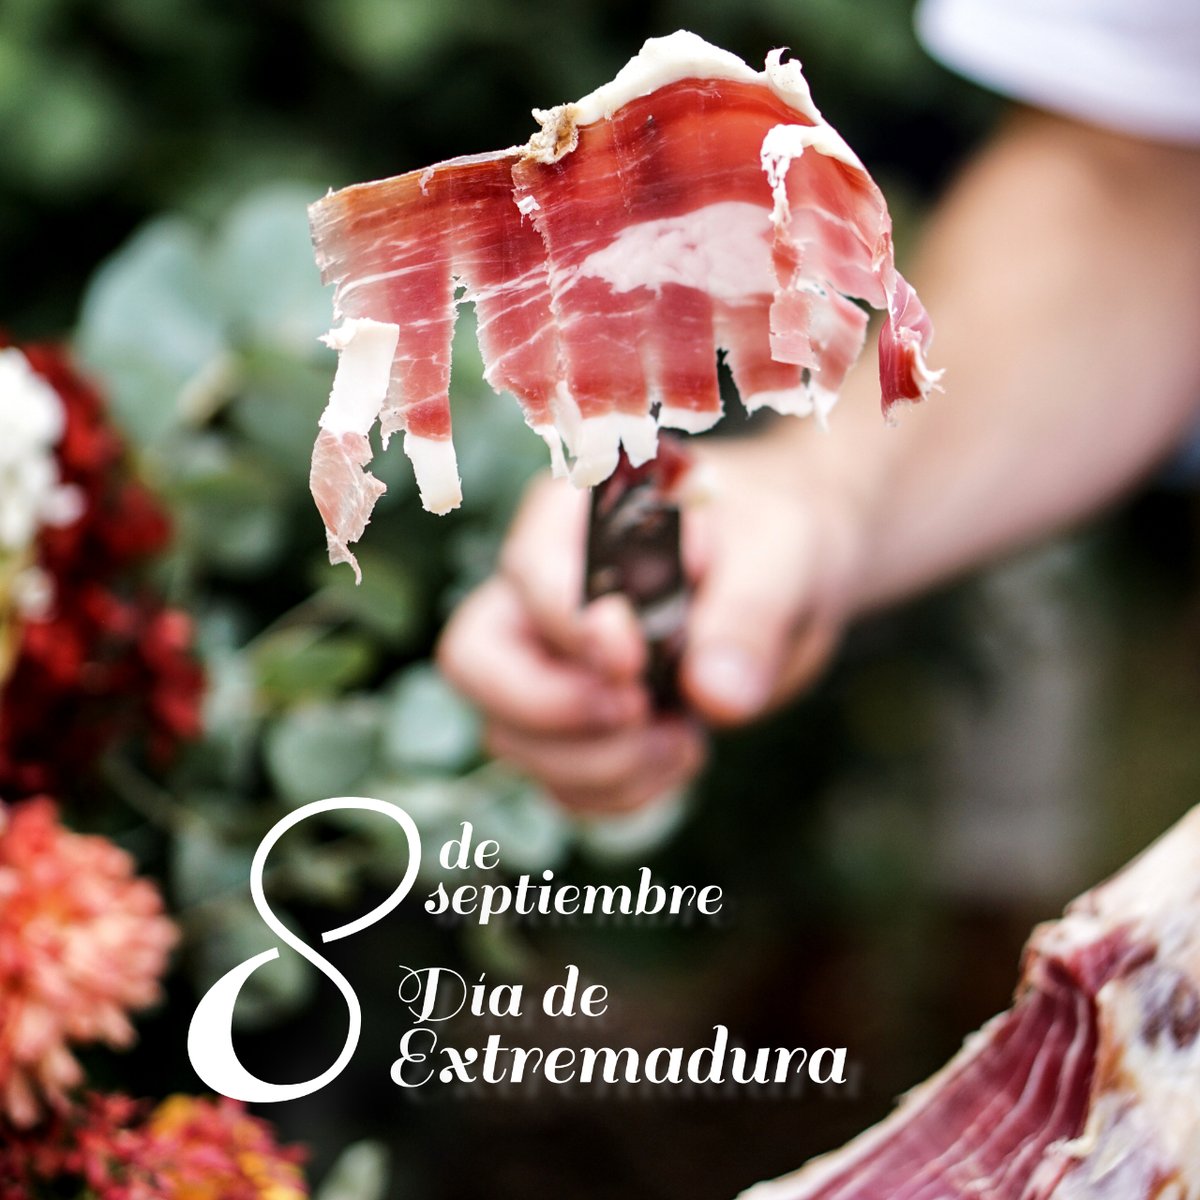 Feliz día de Extremadura

#restaurantehomarus #caceres #extremadura #instafood #deliciososabor #cocinamediterranea #gastronomiaespañola #saborytradición #abriendoboca